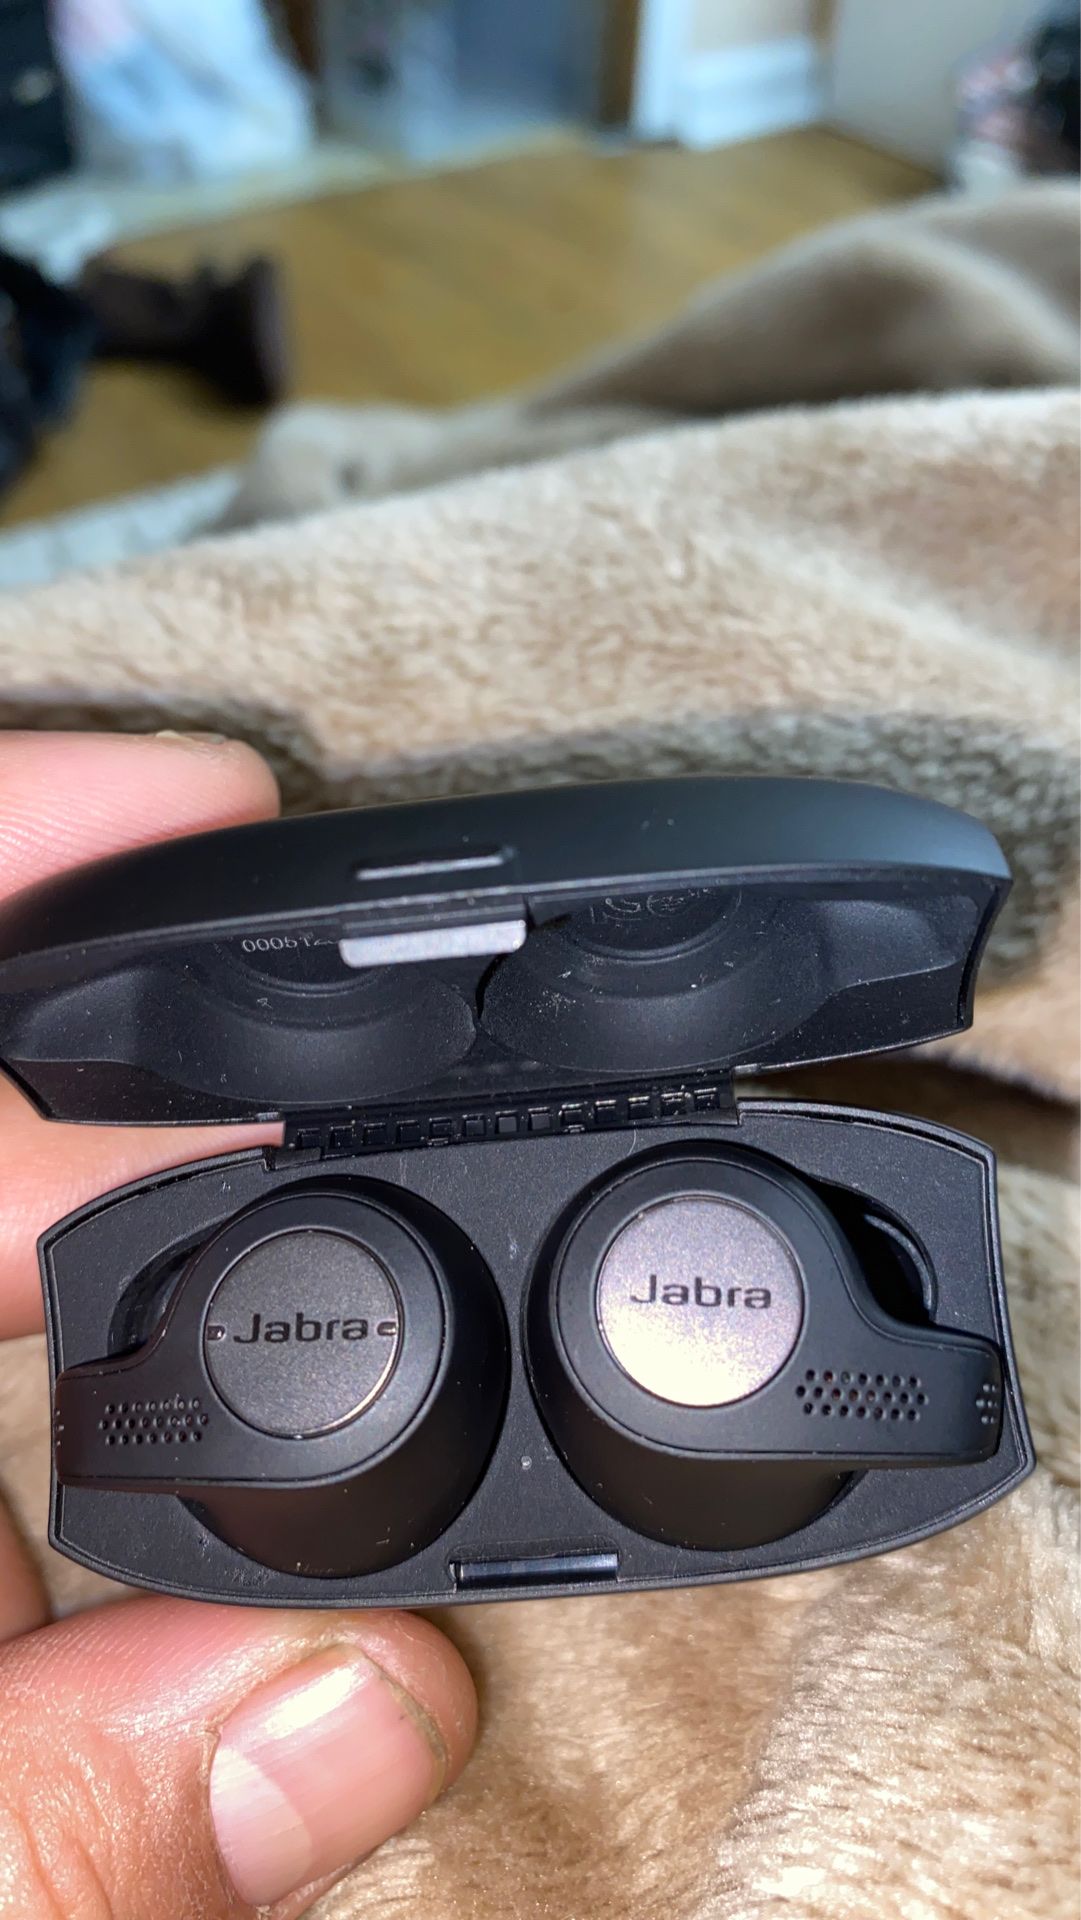 Jabra Bluetooth headphones